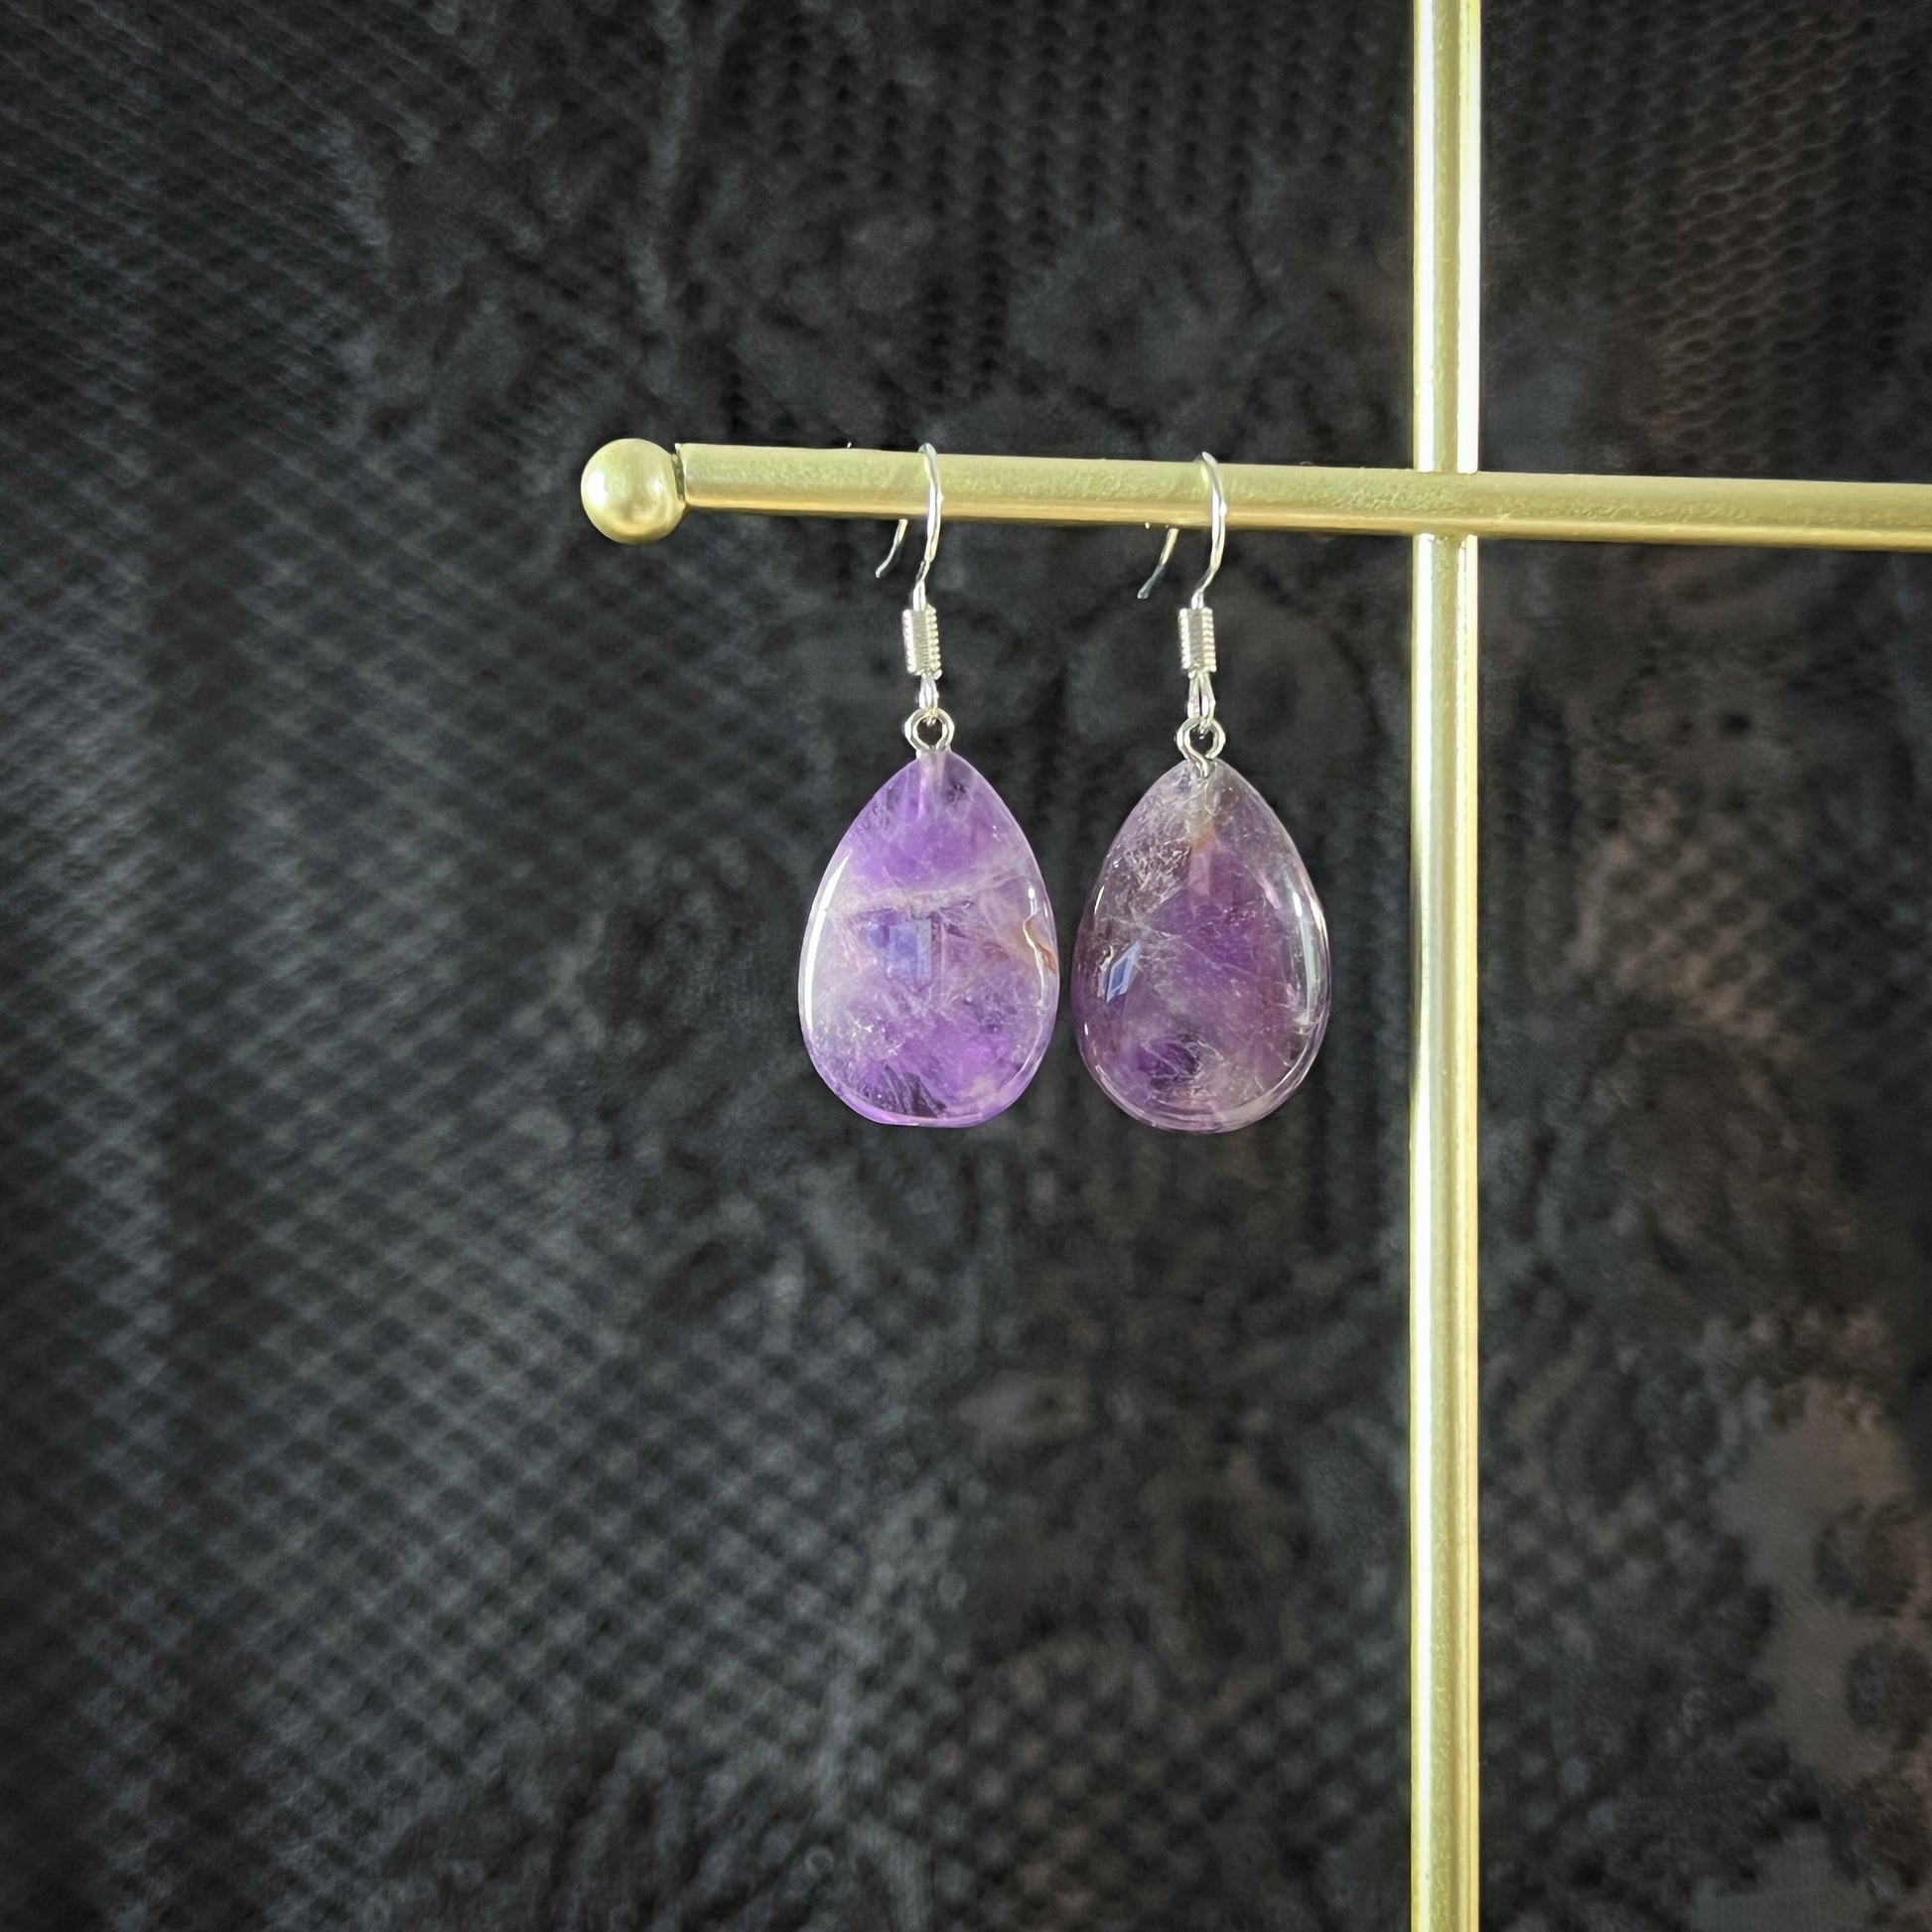 Crystal earrings amethyst jewelry teardrop earrings minimalist dainty earrings amethyst earrings